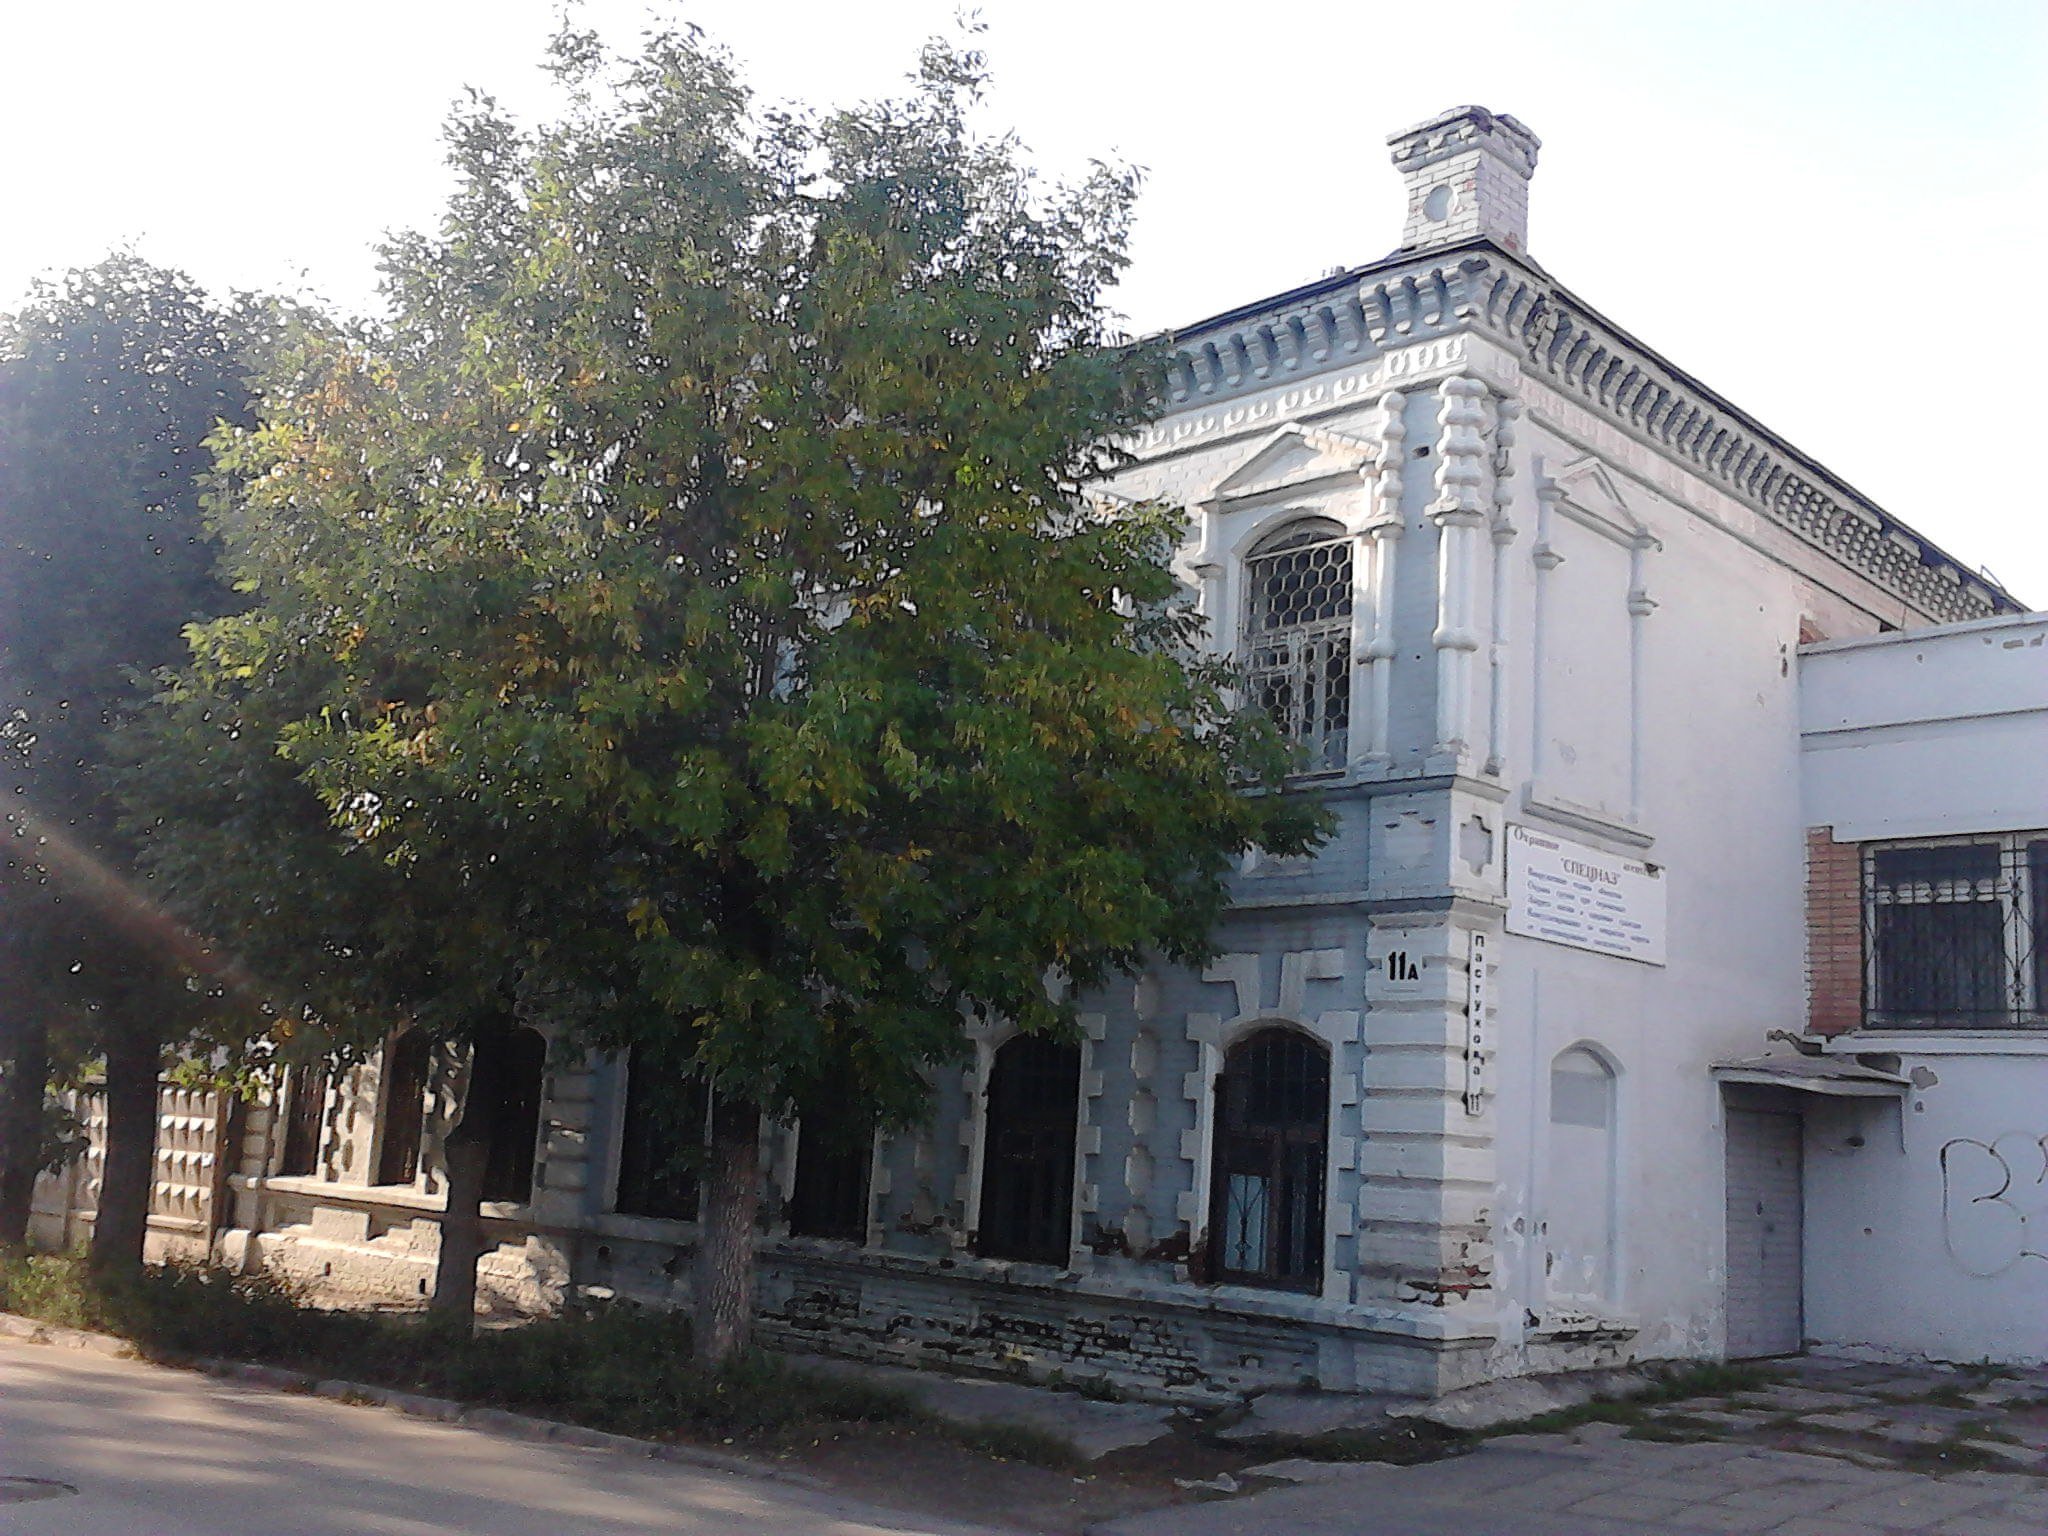 

Реконструкция дома Охизина началась в Ижевске

